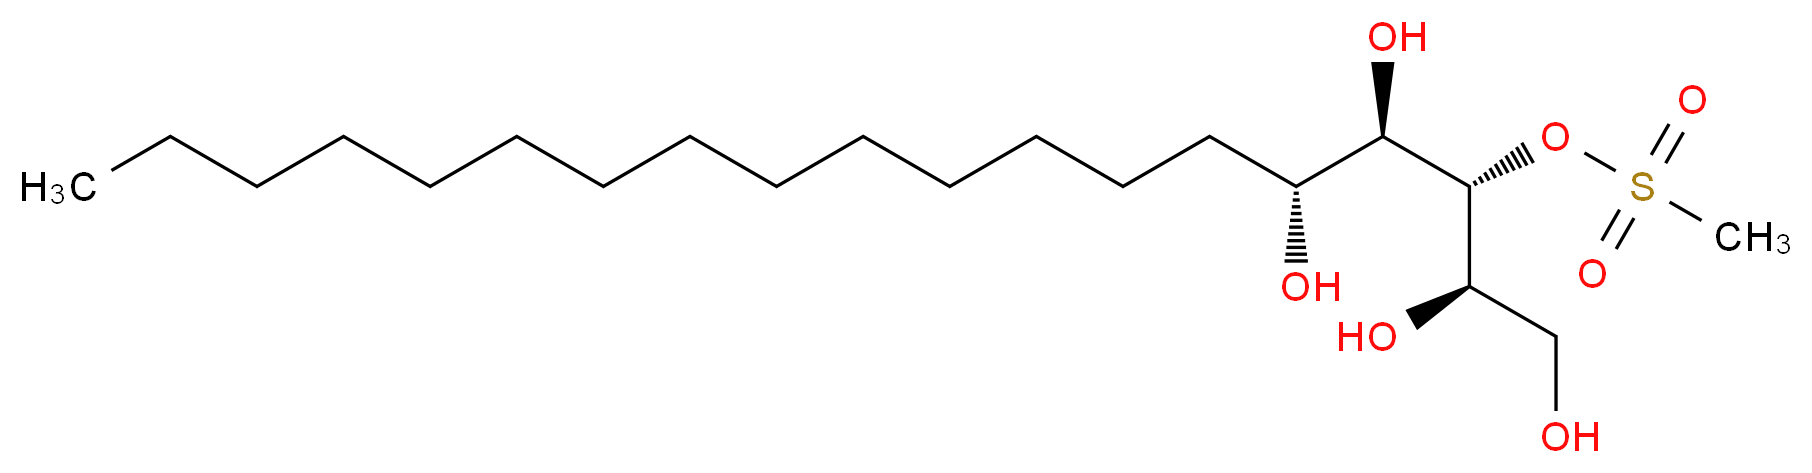 (2R,3R,4R,5R)-1,2,3,4,5-Nonadecanepentol 3-Methanesulfonate_分子结构_CAS_570414-11-8)